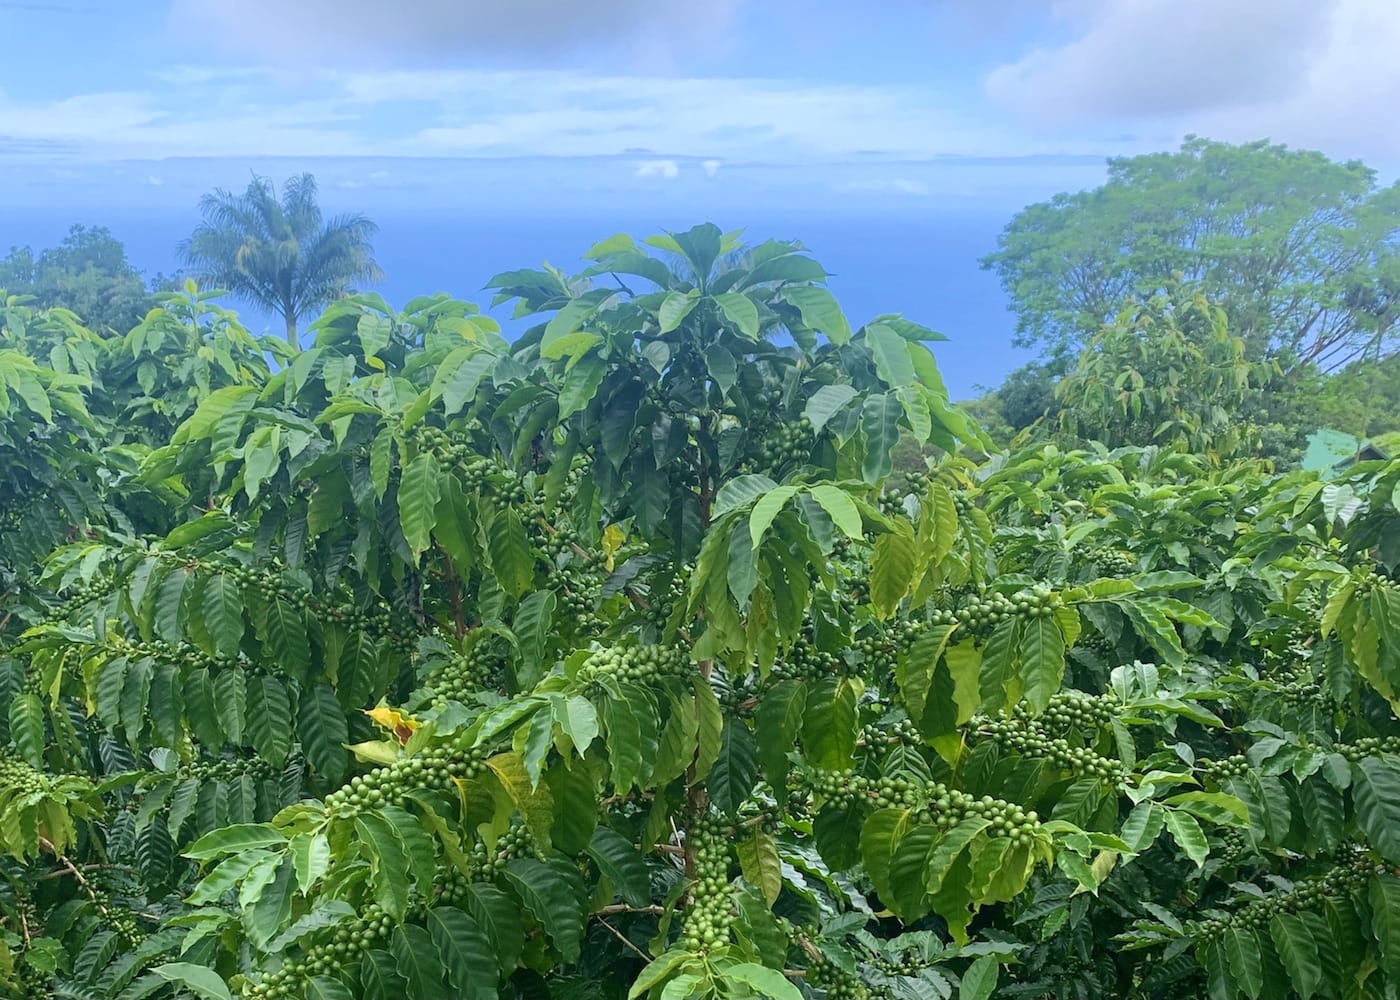 Kona coffee growing in Hawaii